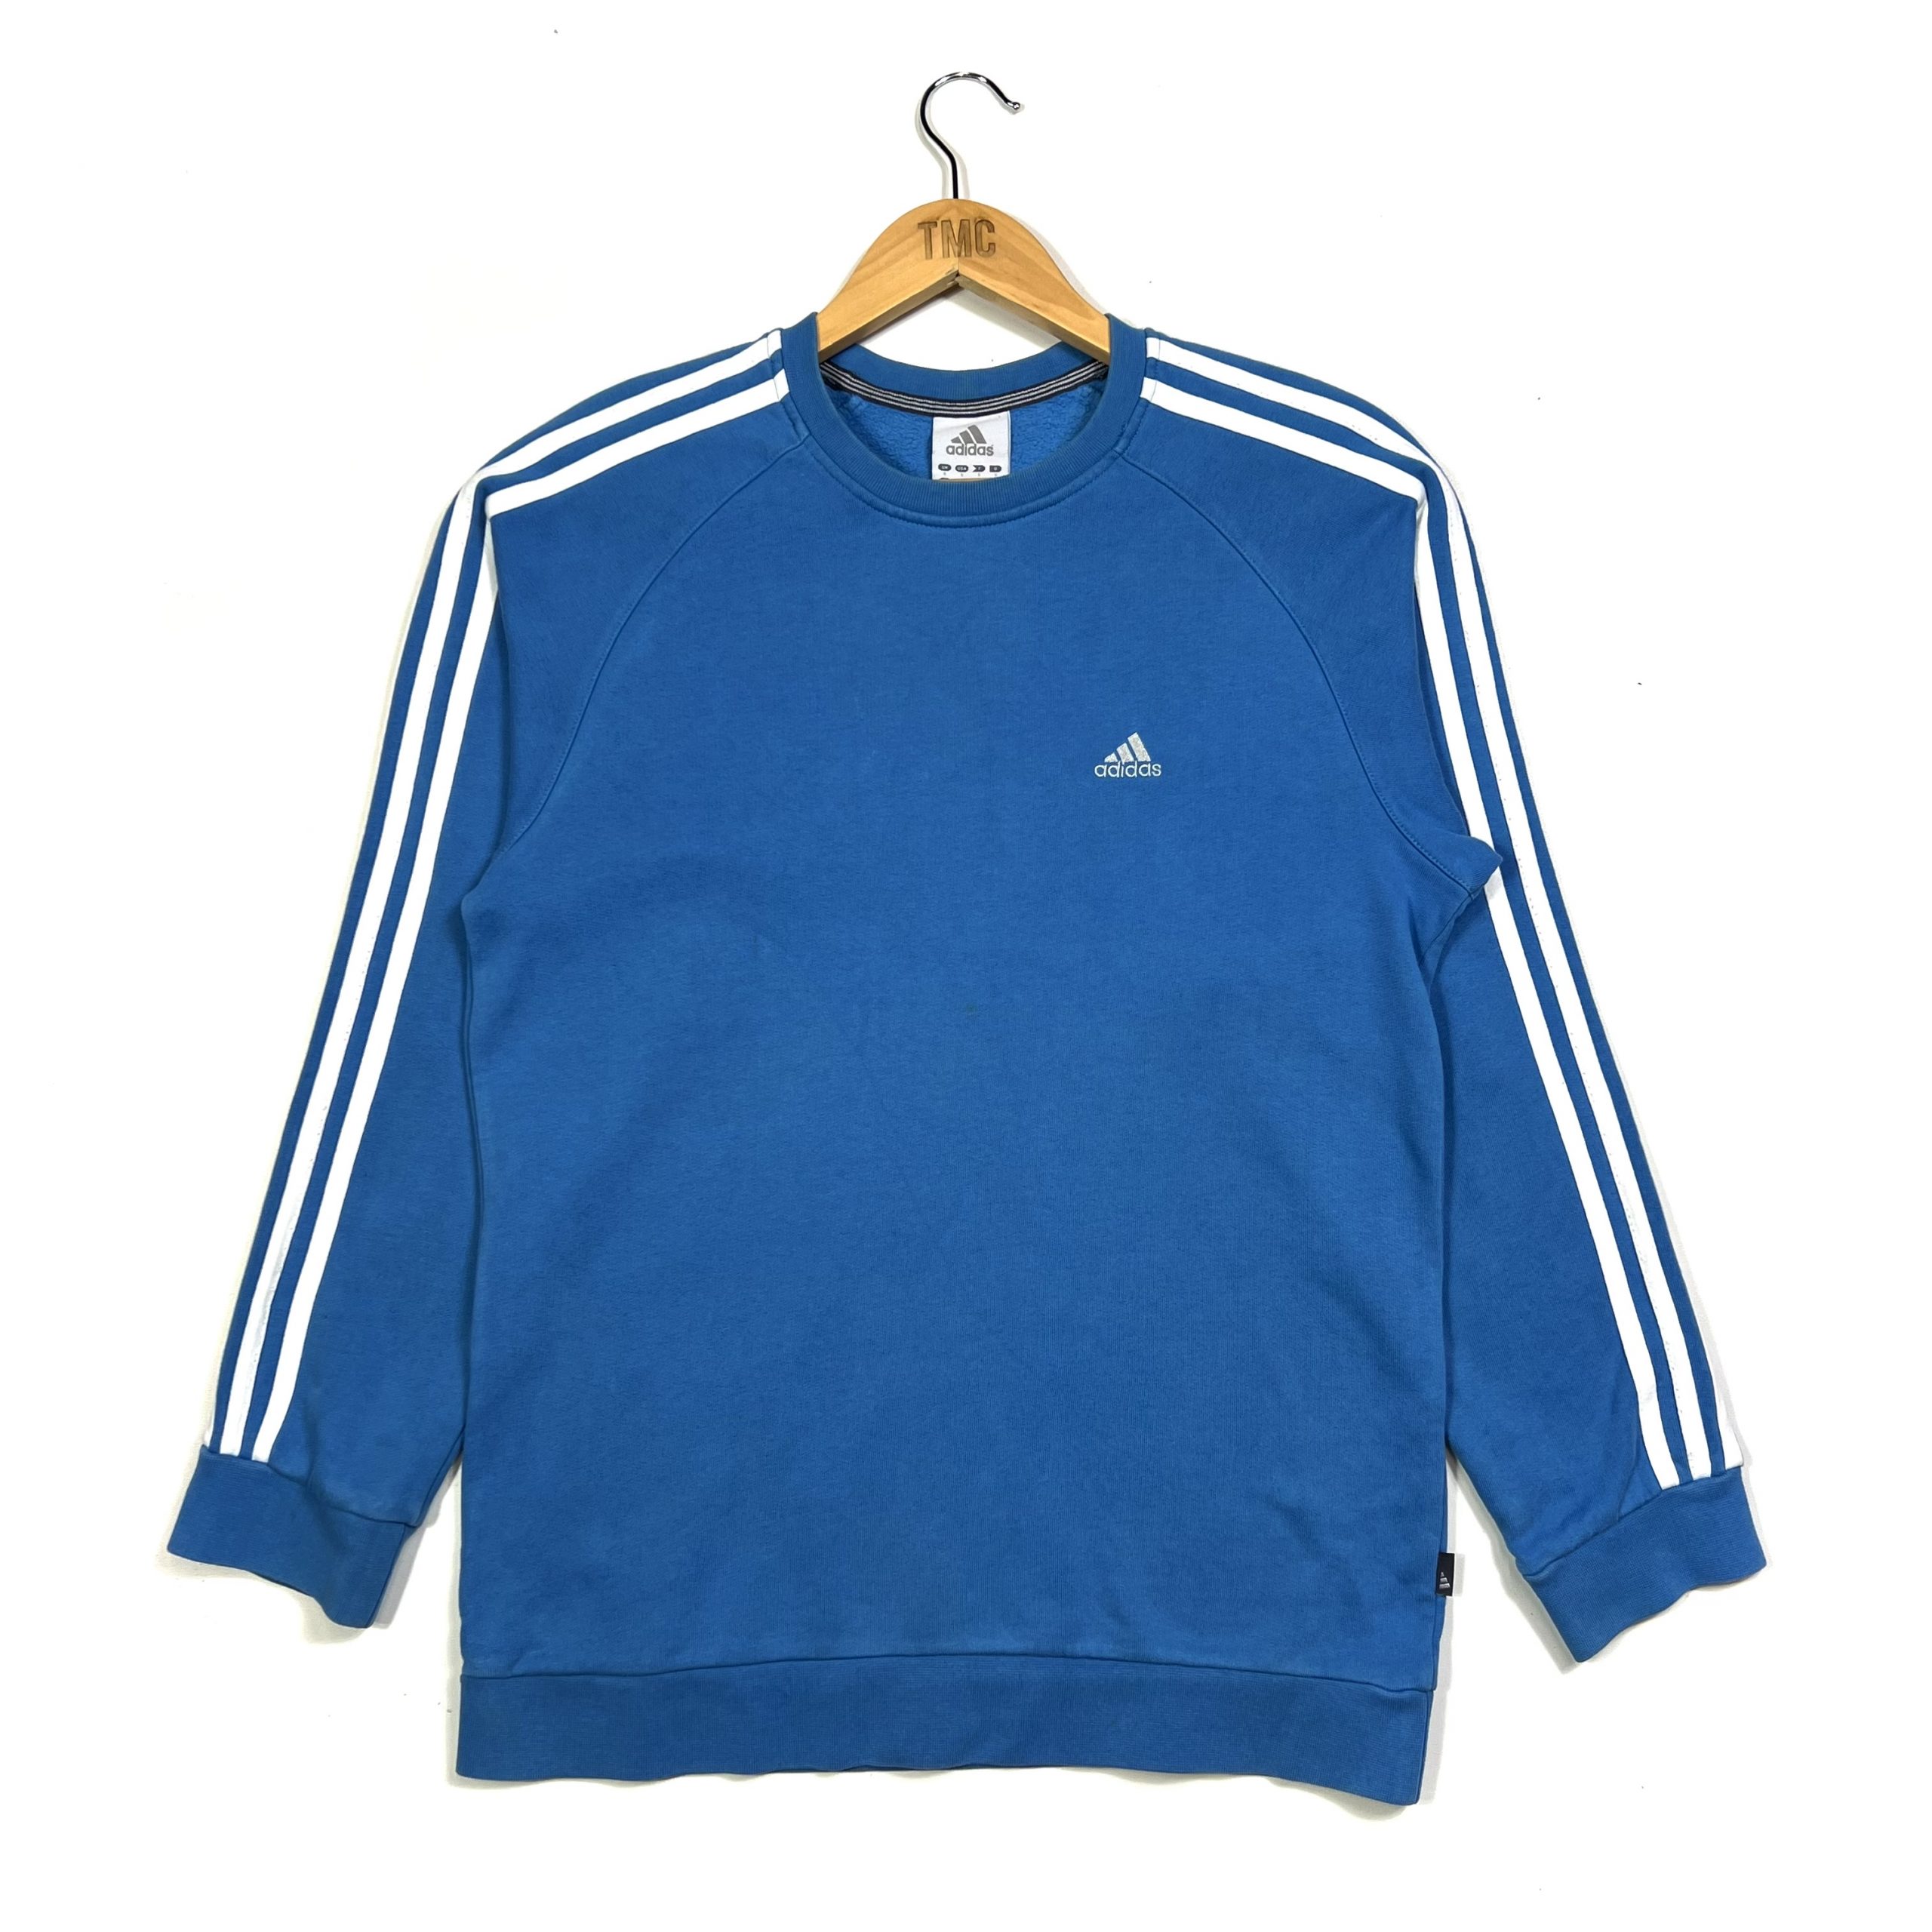 Adidas 3-Stripes Sweatshirt - Blue - S - TMC Vintage - Vintage Clothing